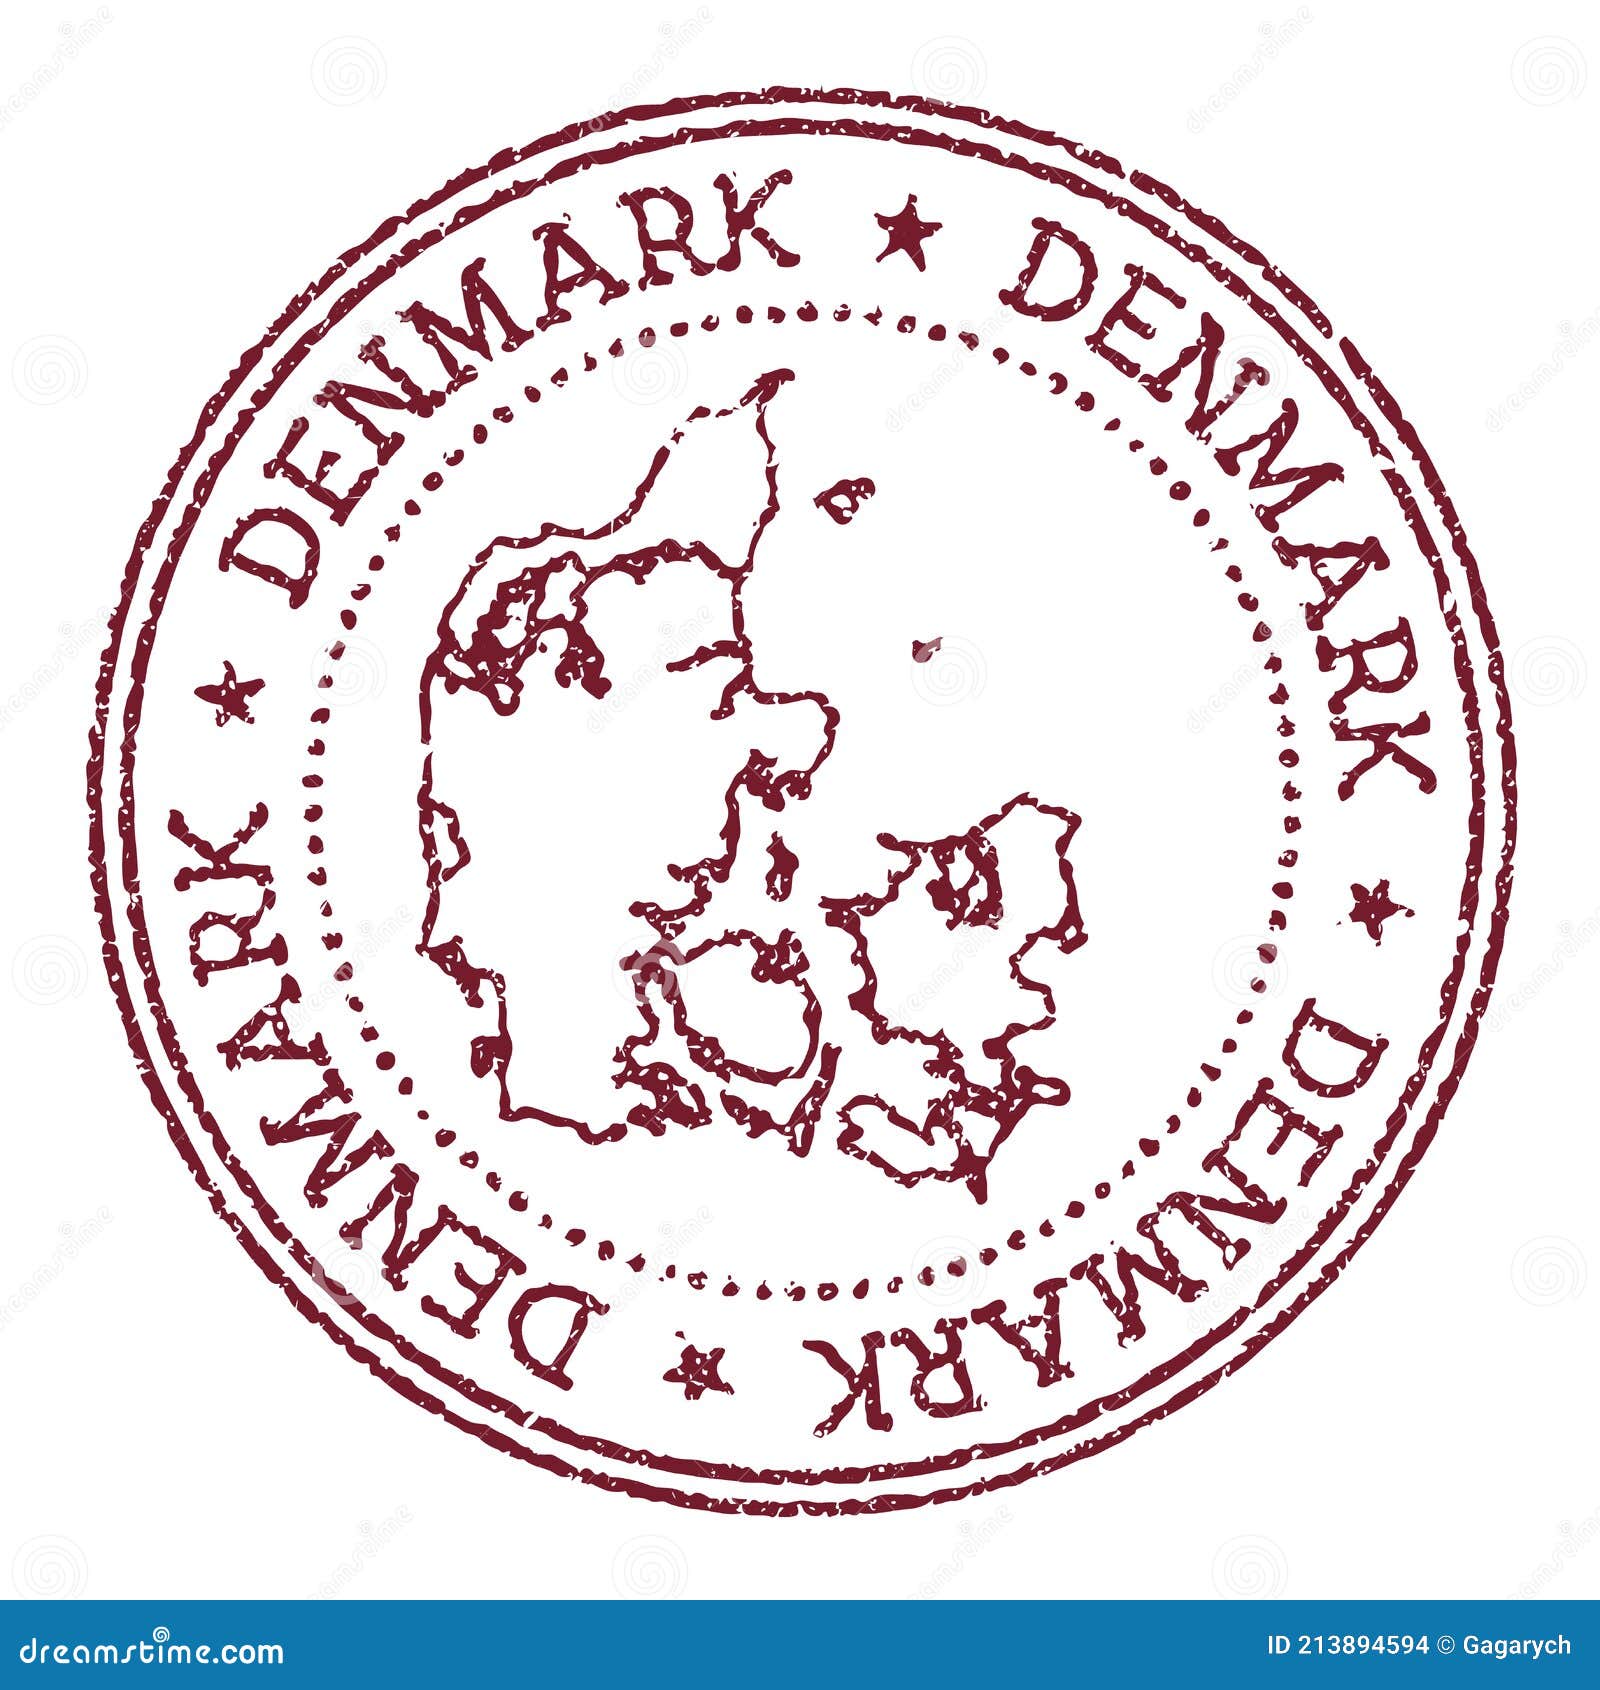 丹麦标志 库存照片. 图片 包括有 空白, 哥本哈根, 斯堪的那维亚, 交叉, 欧洲, 王国, 红色, 丹麦语 - 65546